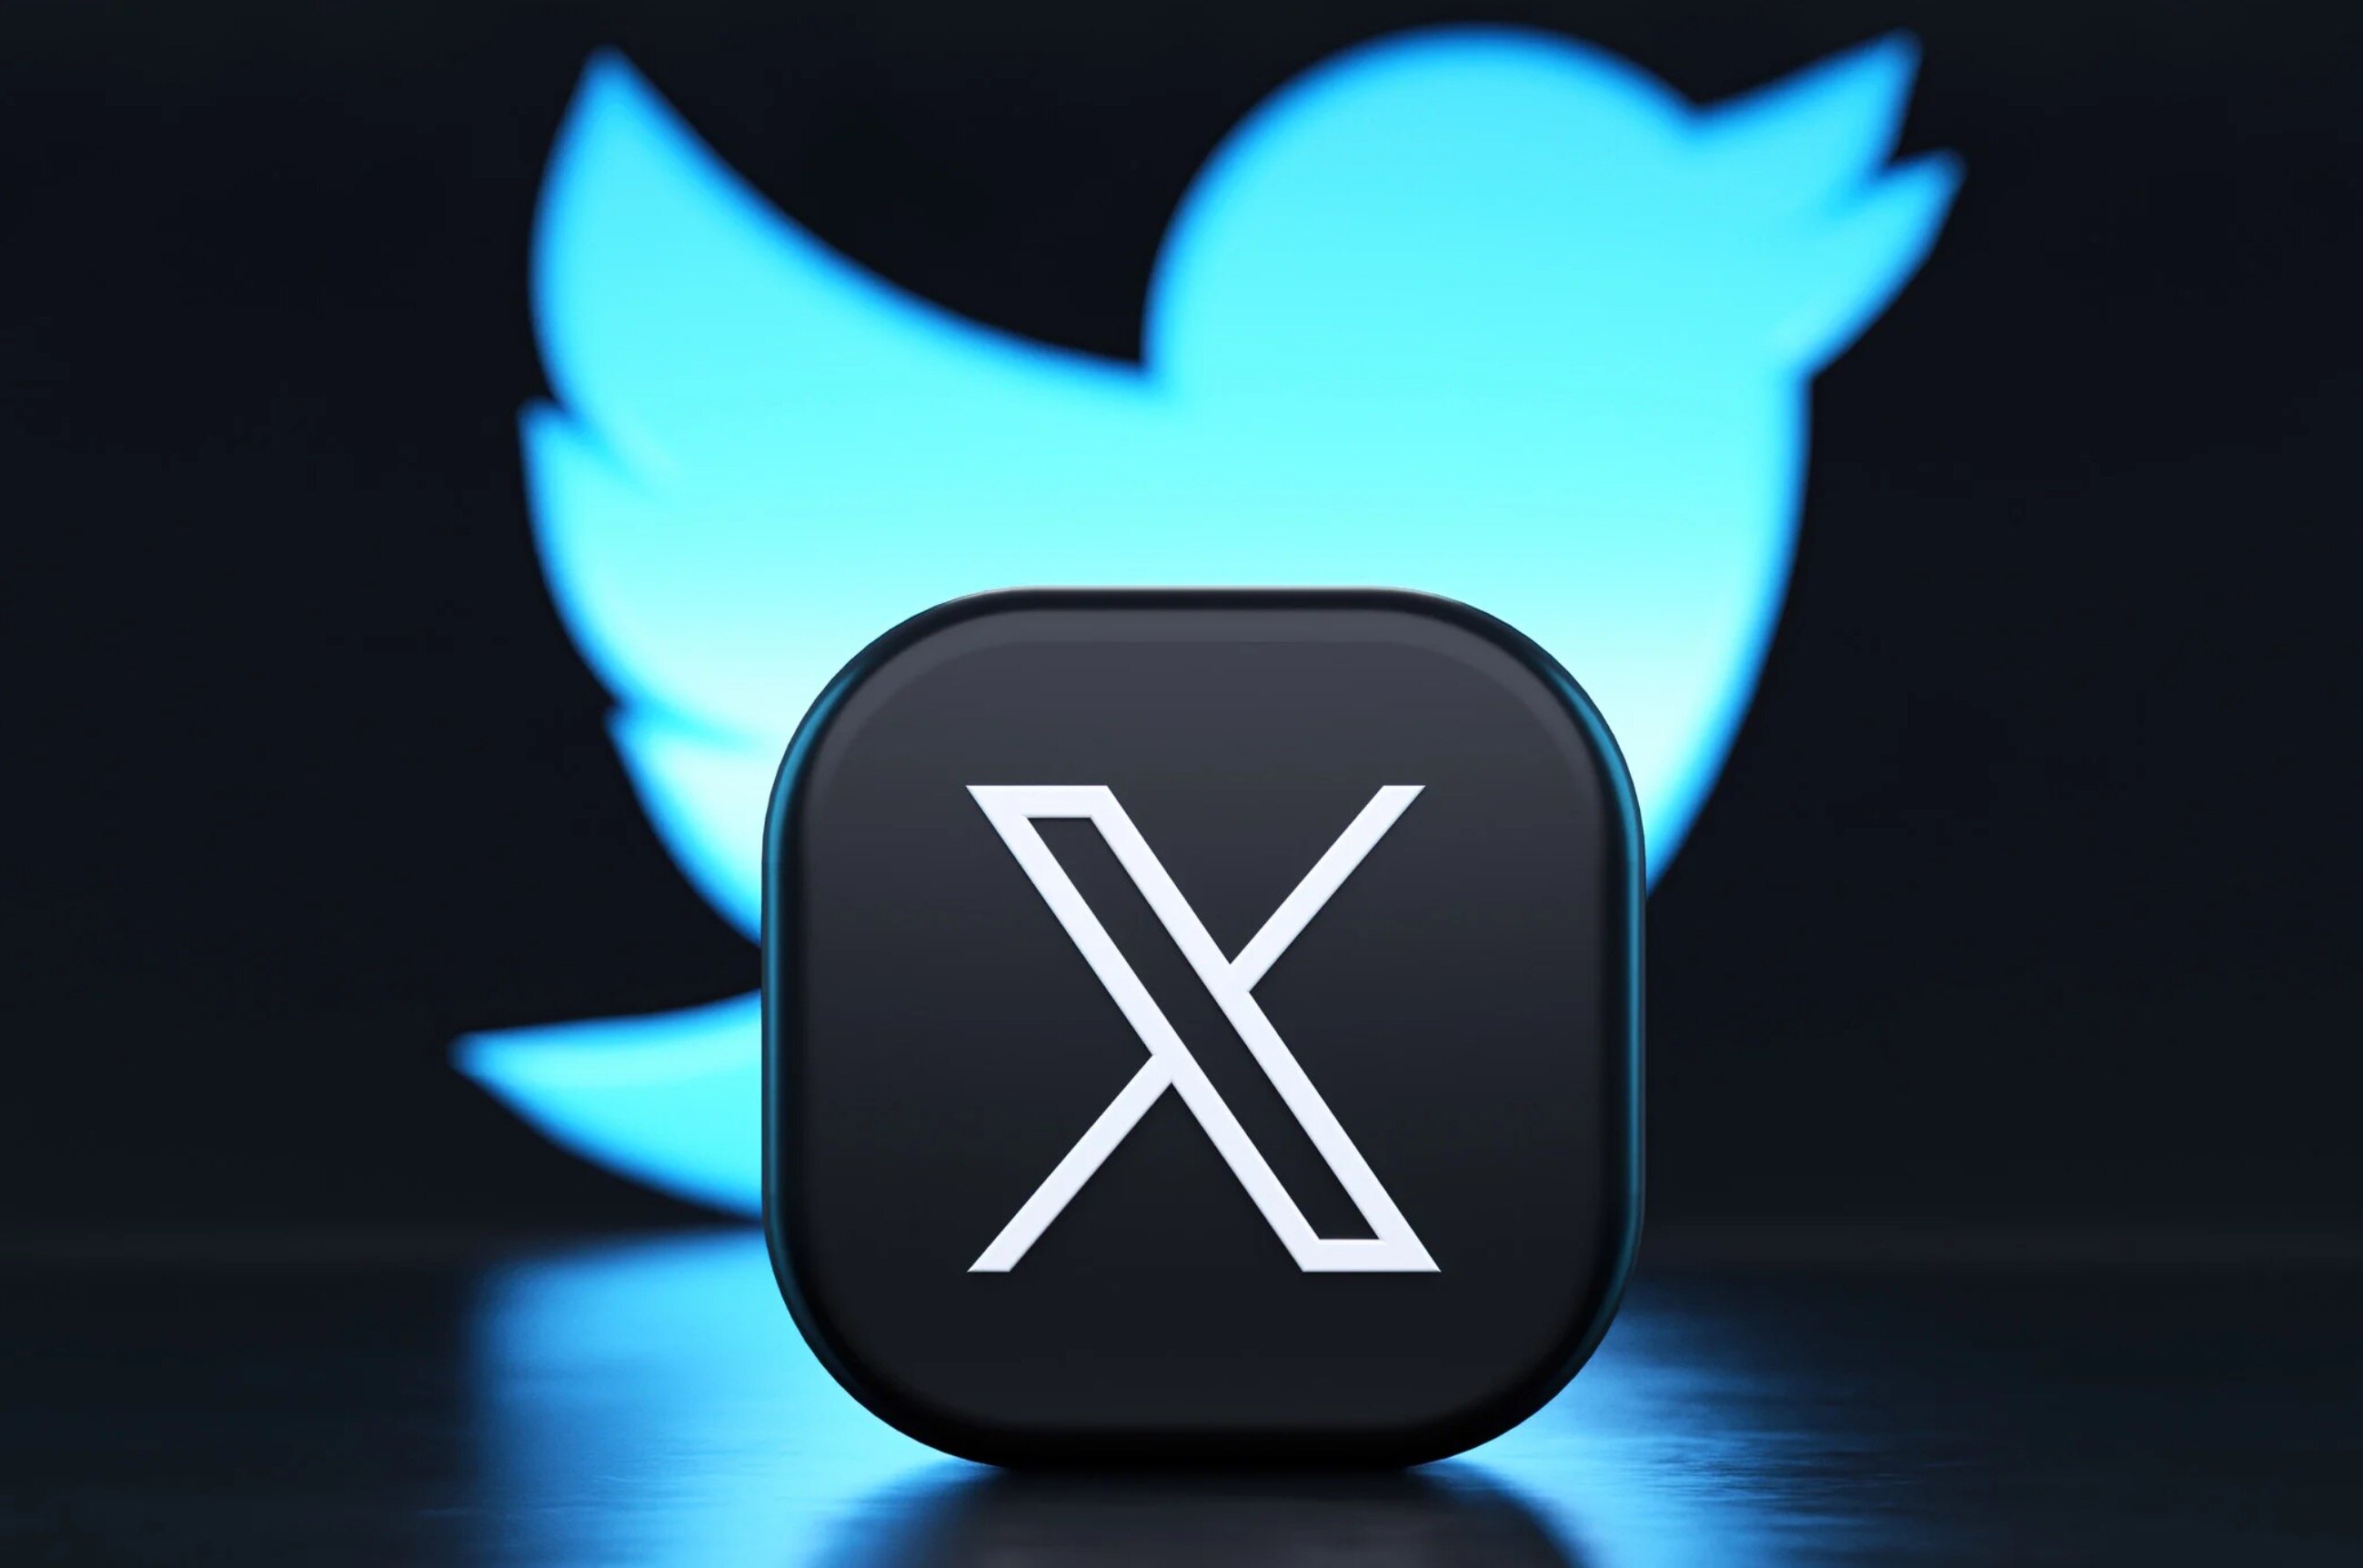 Το X/Twitter ξεκινά να χρεώνει 1 δολάριο ετησίως τους χρήστες για την καταπολέμηση των bots, ξεκινώντας με δοκιμή σε δύο χώρες